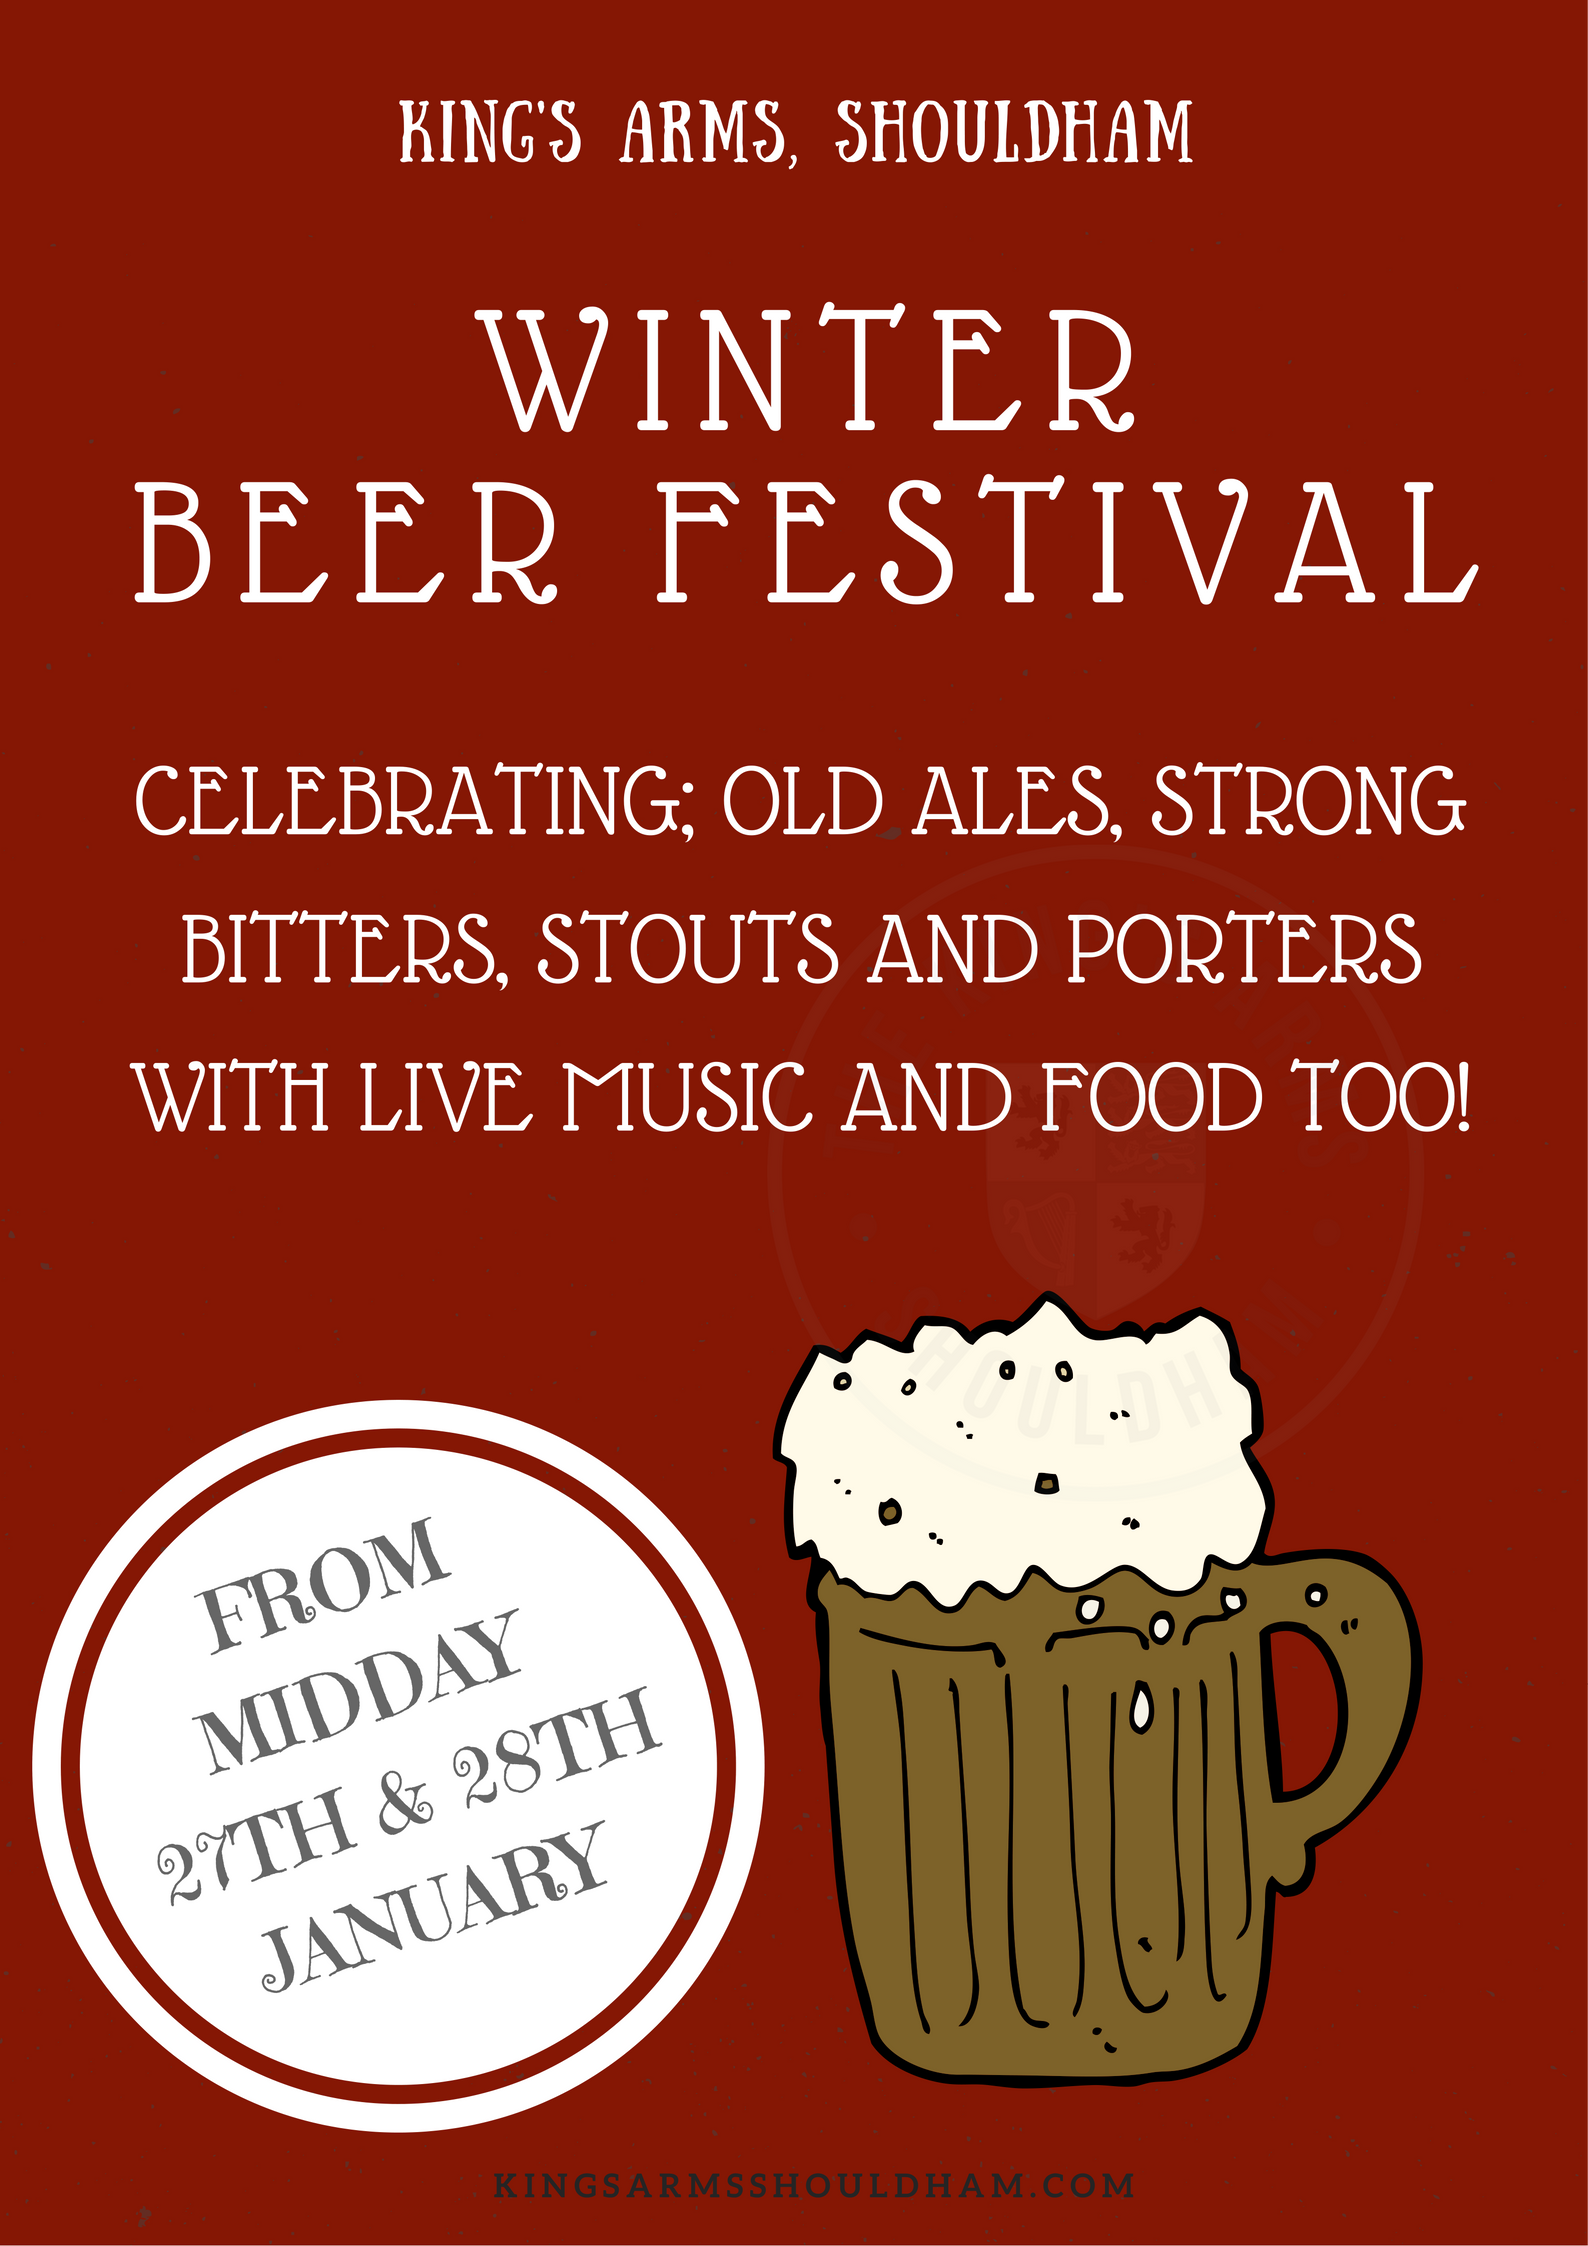 Winter Beer Festival Kings Arms Shouldham